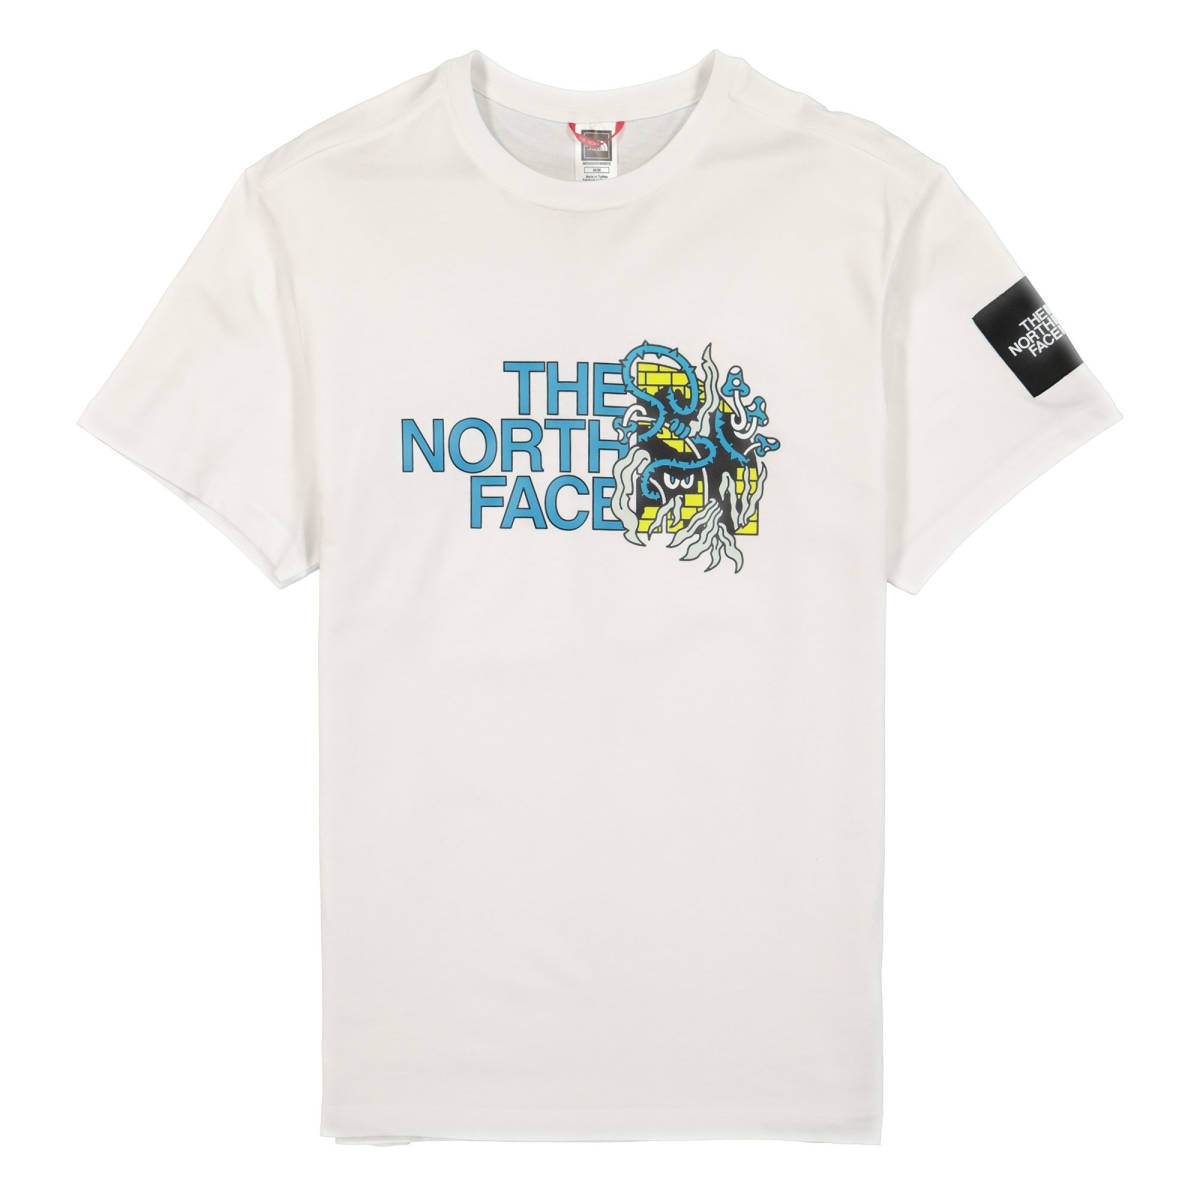 Lサイズ相当 The North Face ノースフェイス グラフィックロゴ半袖Tシャツ 白